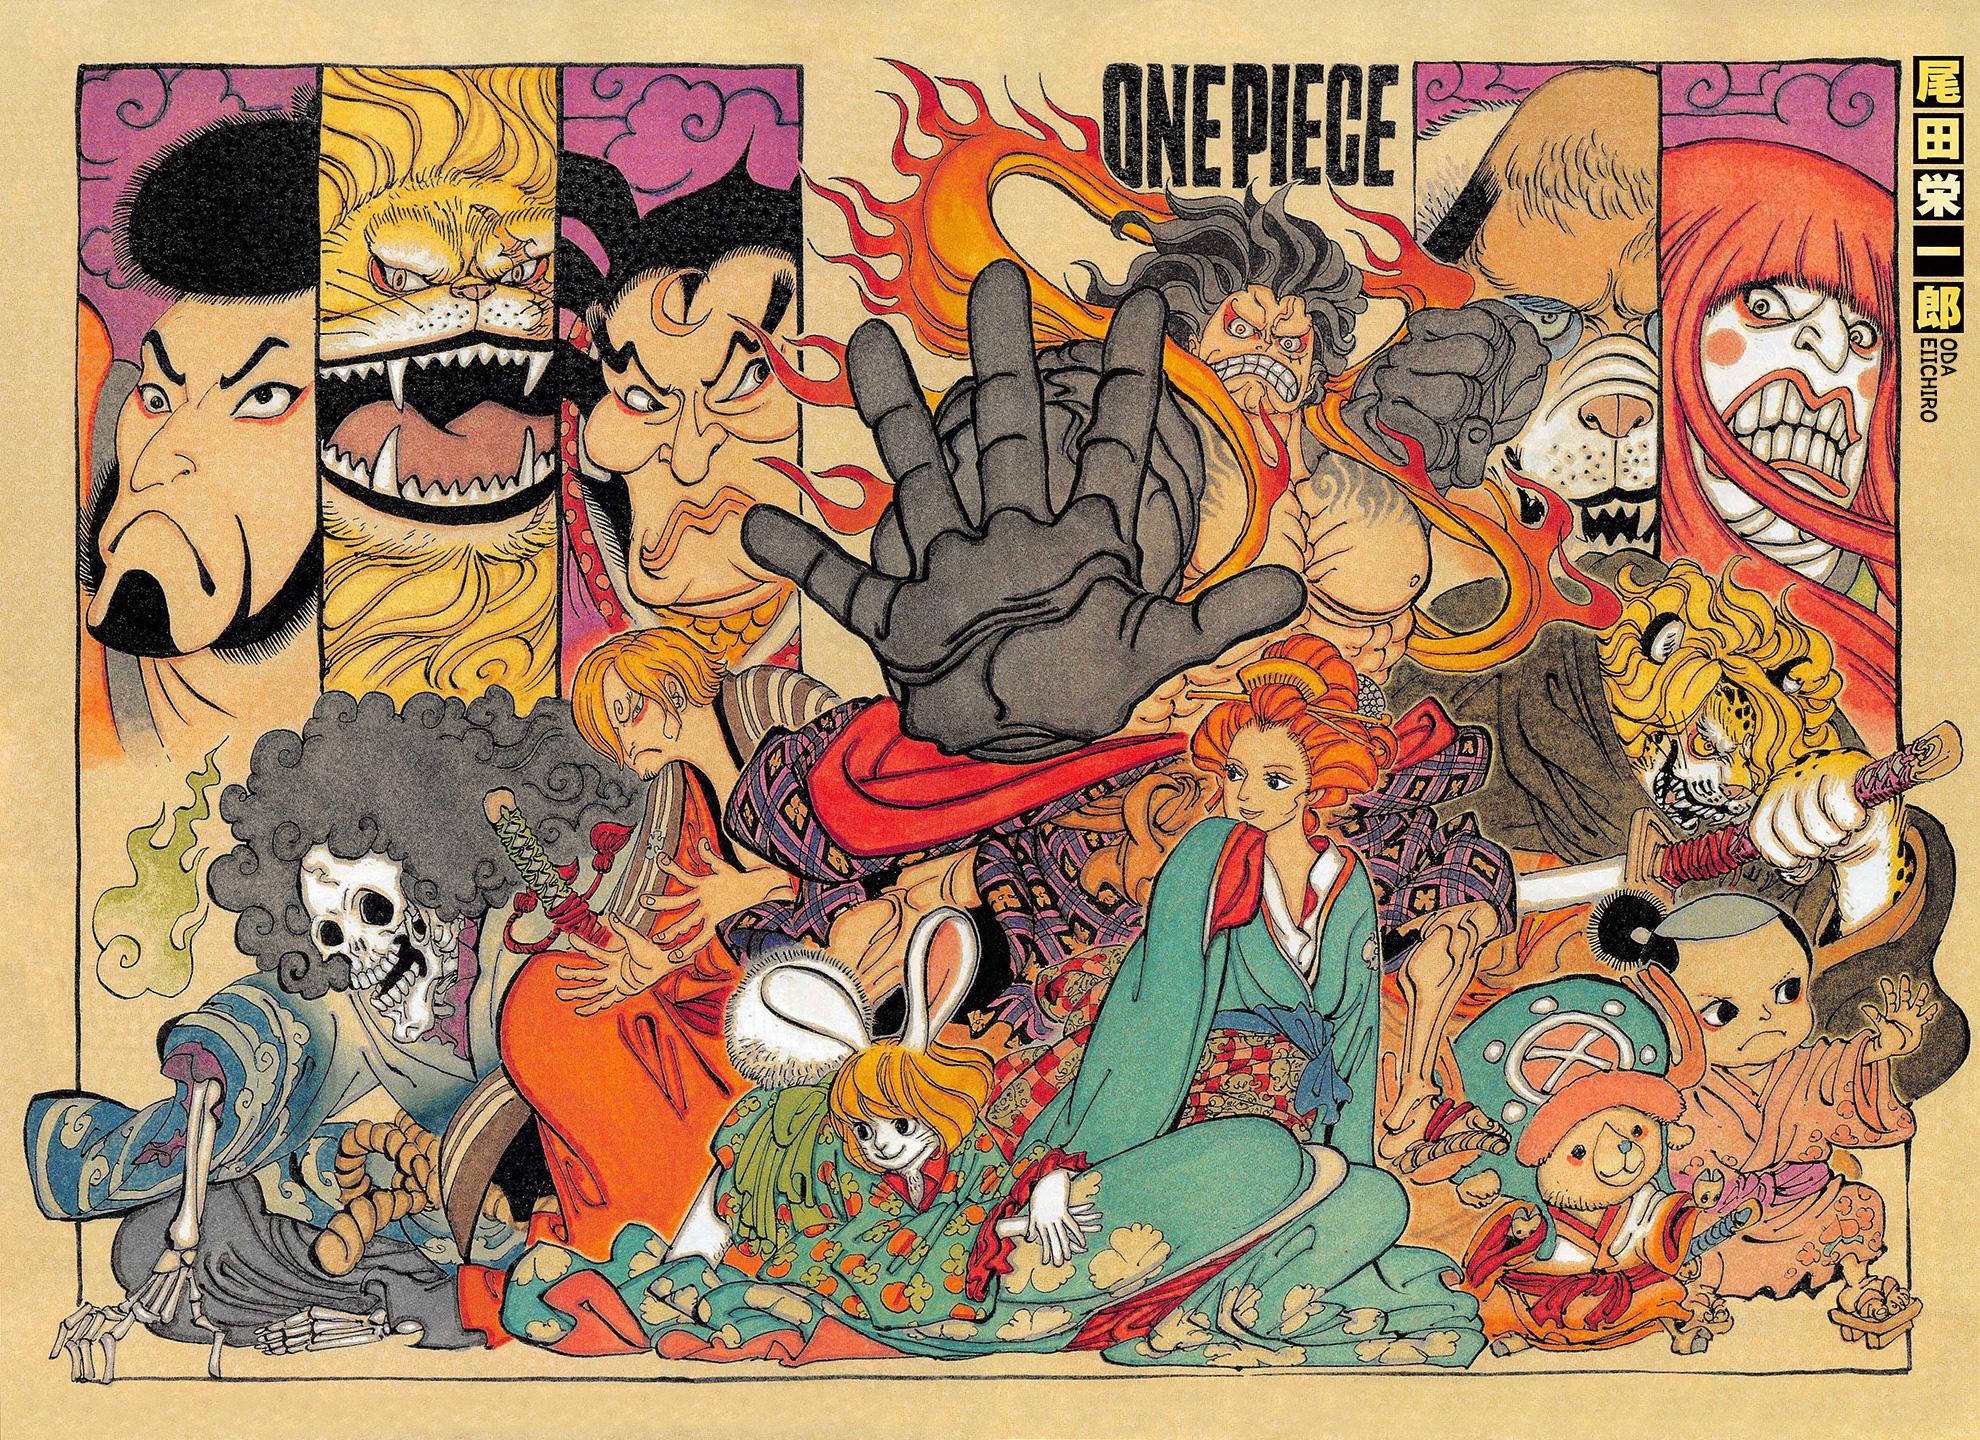 Манга Ван Пис 821 (One Piece Manga) .